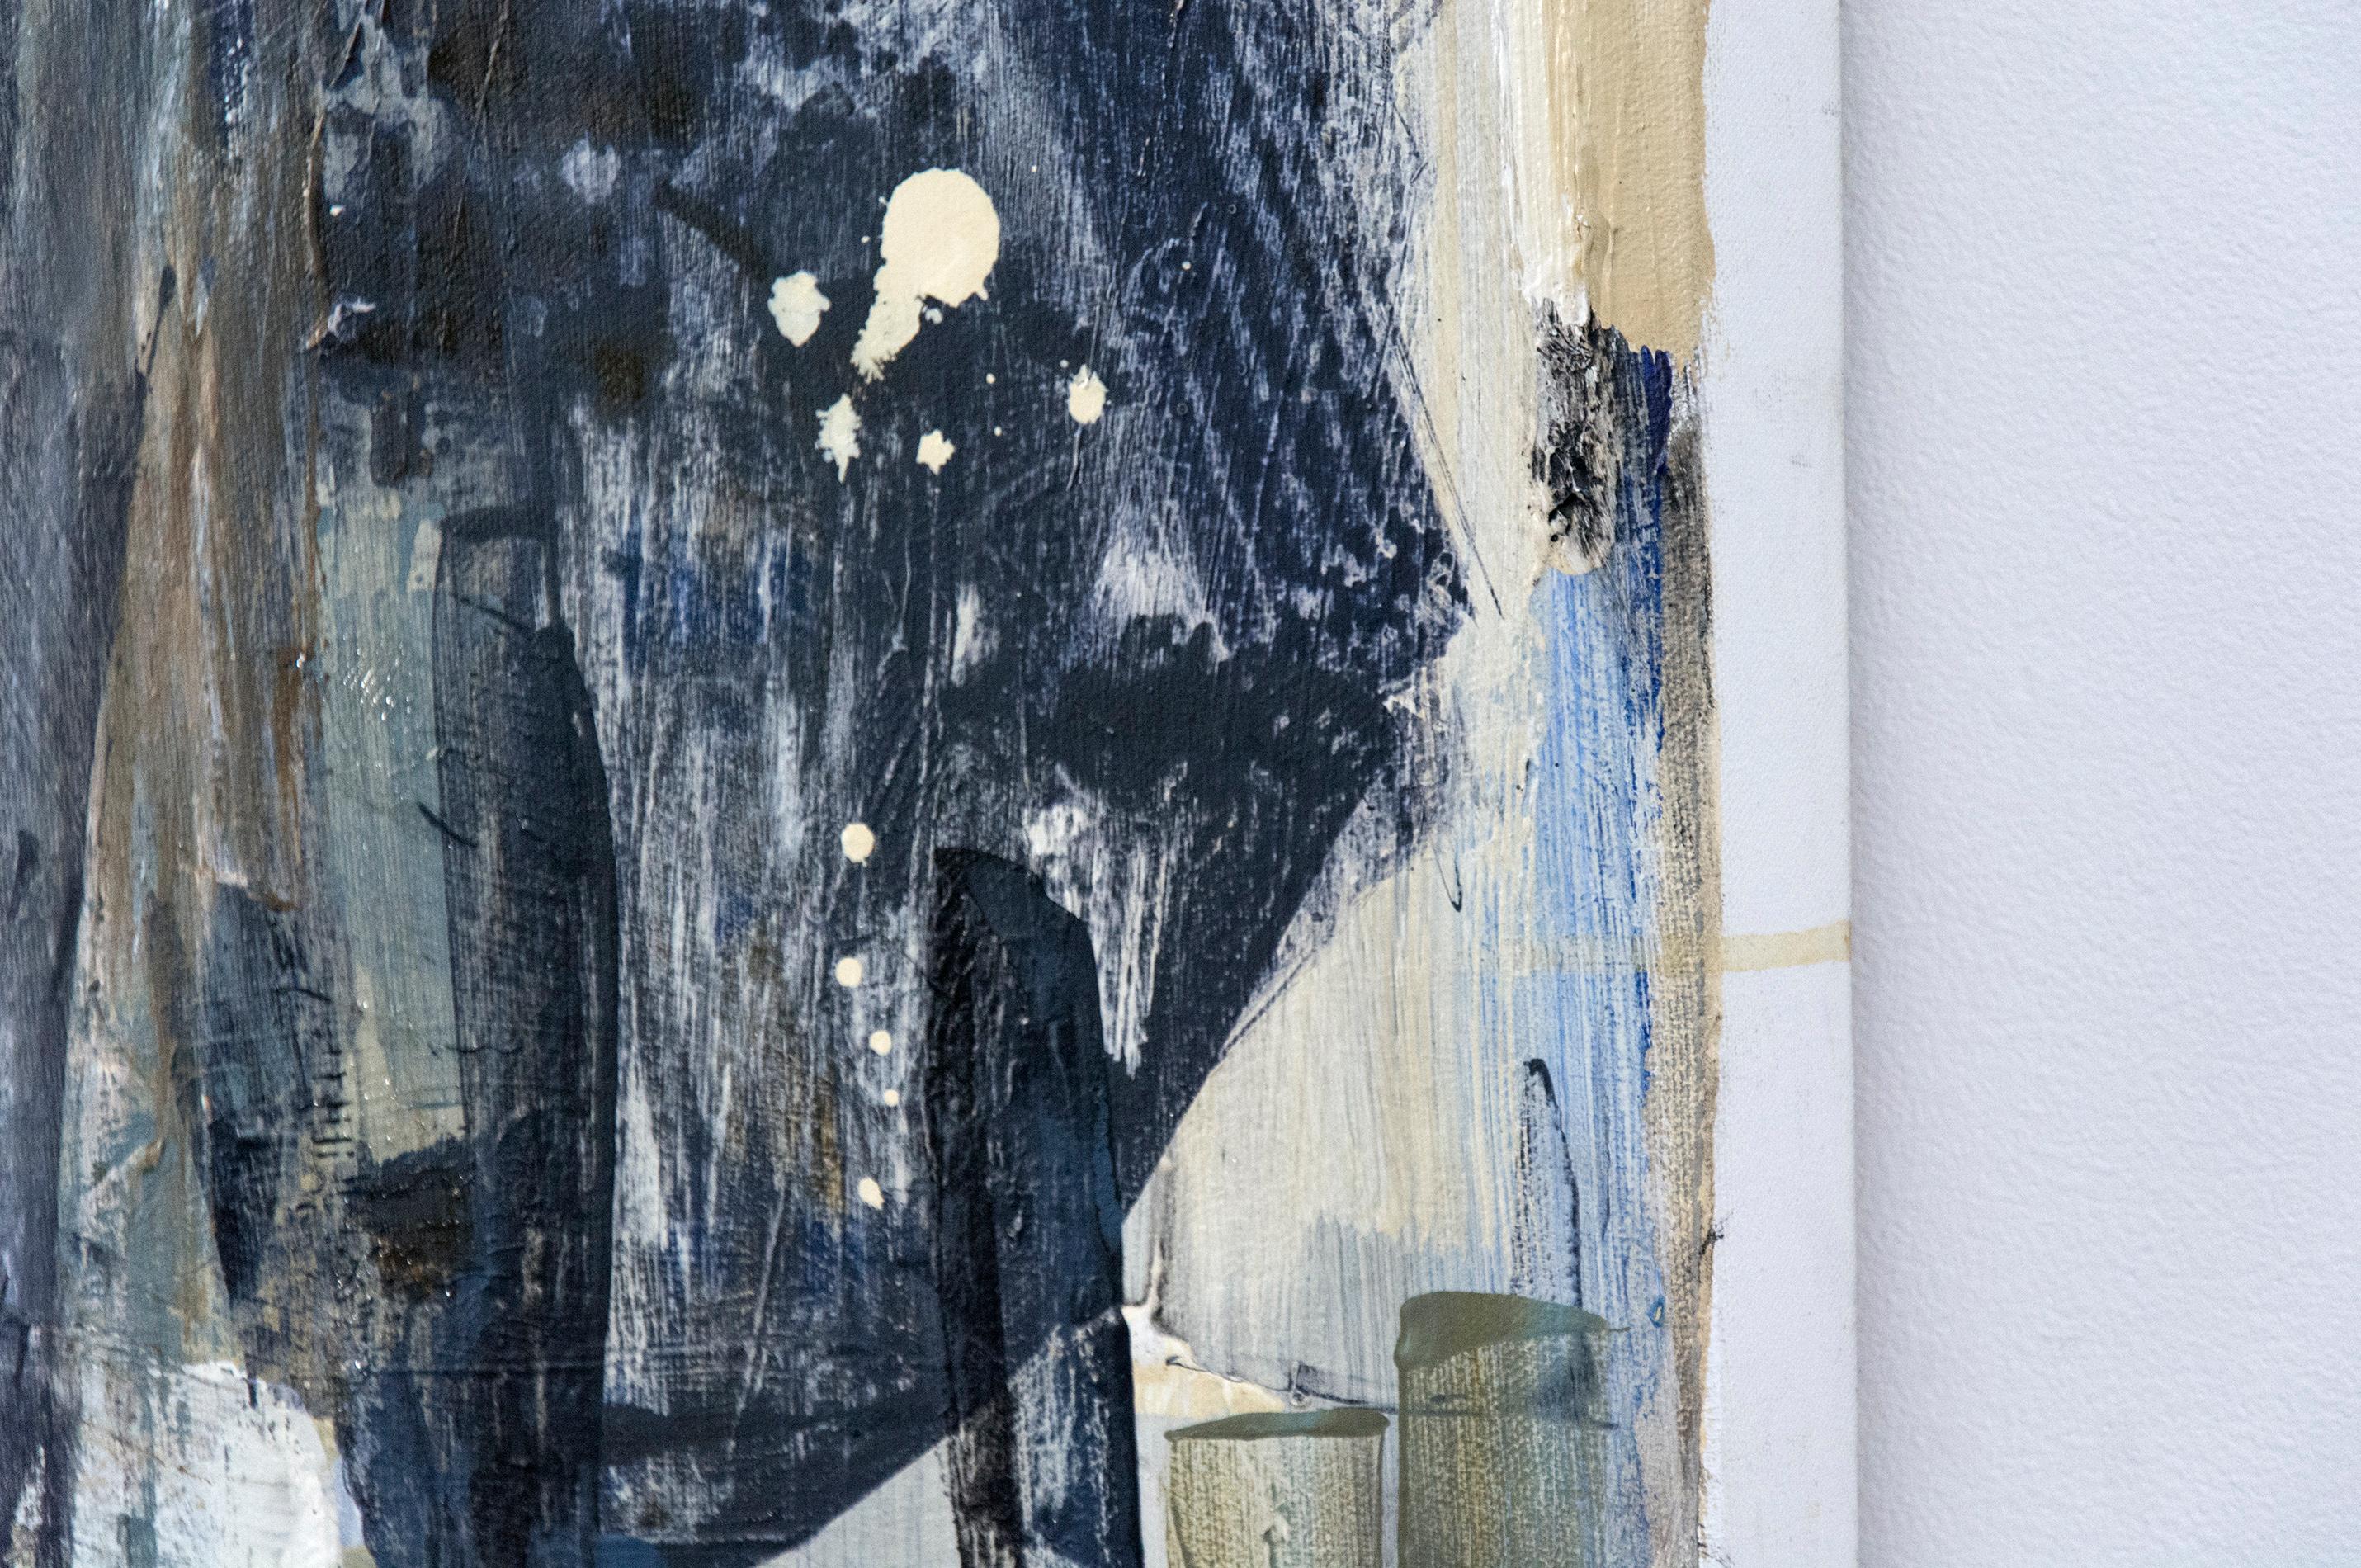 Malerische und collagierte Blöcke aus blassem Umbra, Taubengrau und Weiß bilden ein fließendes Patchwork in diesem kontemplativen Gemälde von Shireen Kamran.

Shireen Kamran (geb. 1954, Lahore, Pakistan) schafft lyrische und dramatische Werke, die